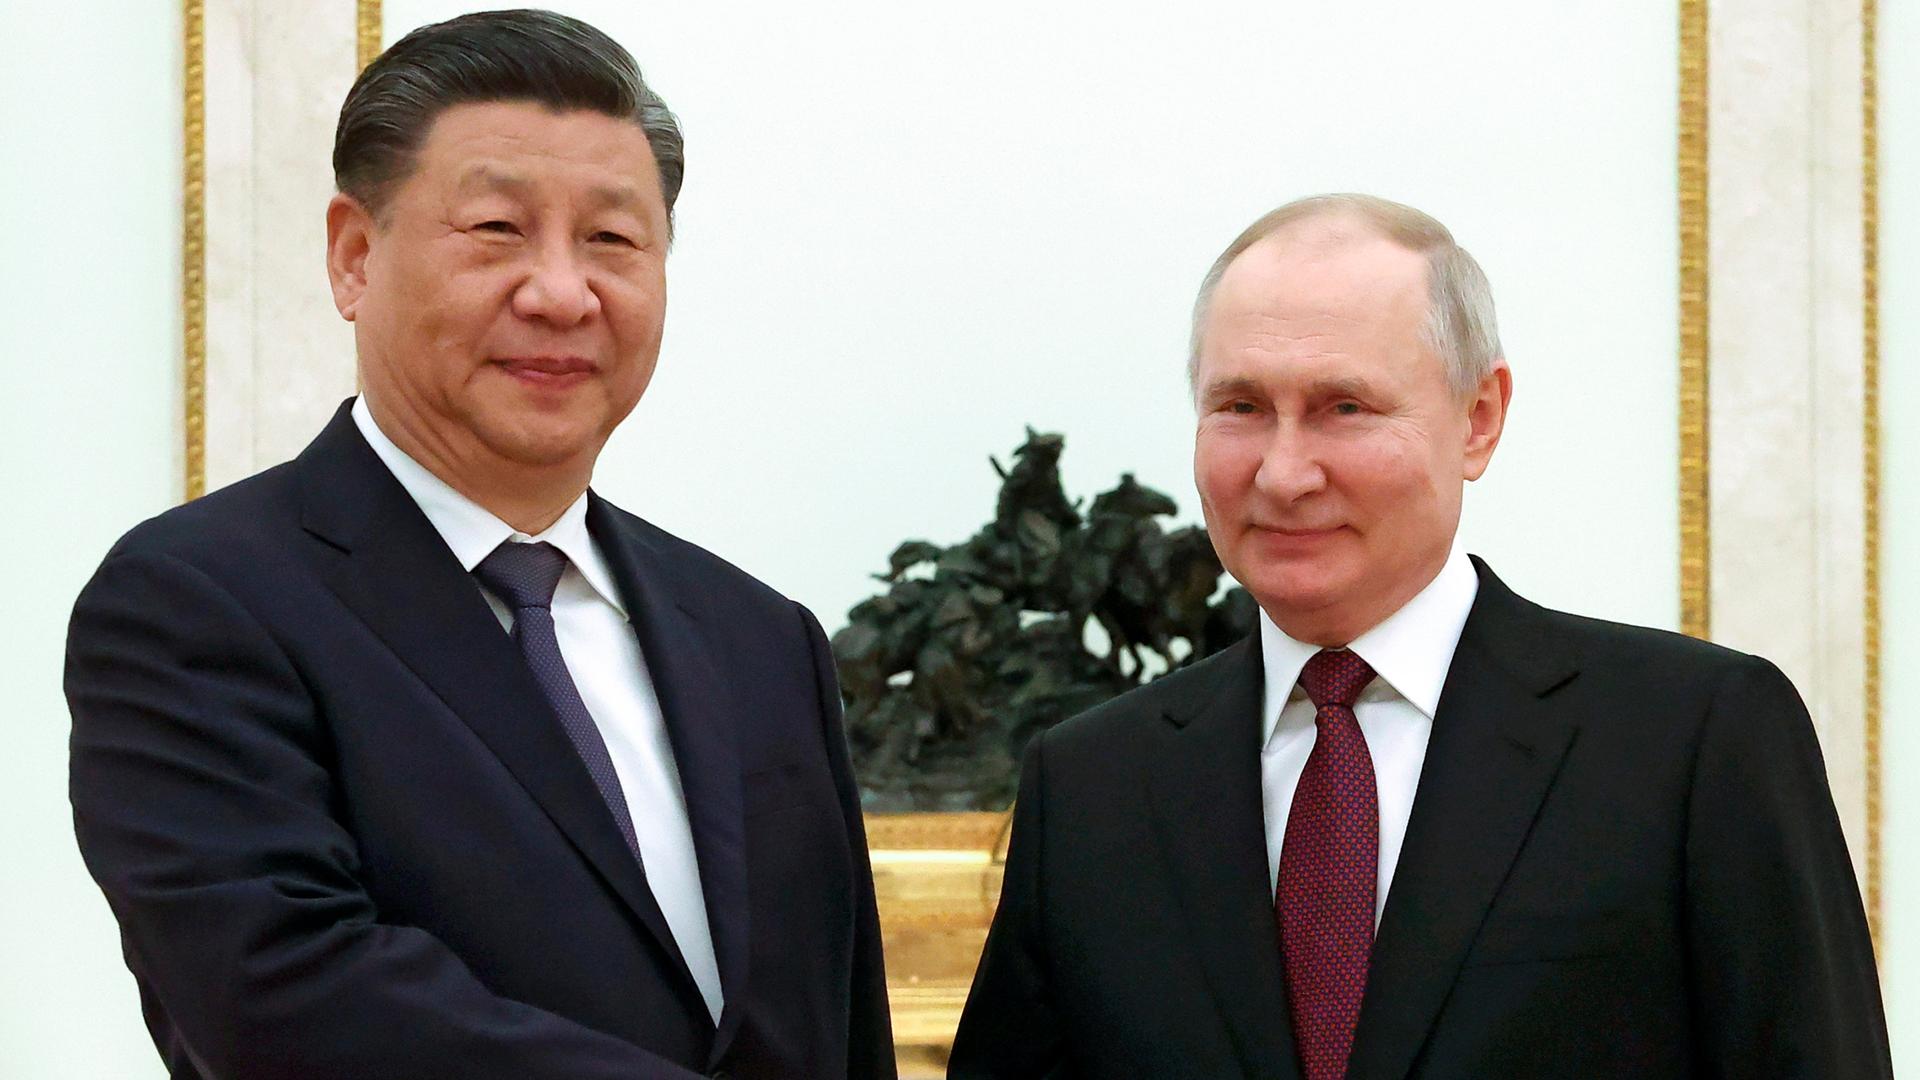 Dreitägiger Staatsbesuch in Russland - Xi zu Putin: "In der Ukraine-Frage mehren sich die Stimmen für Frieden und Vernunft"